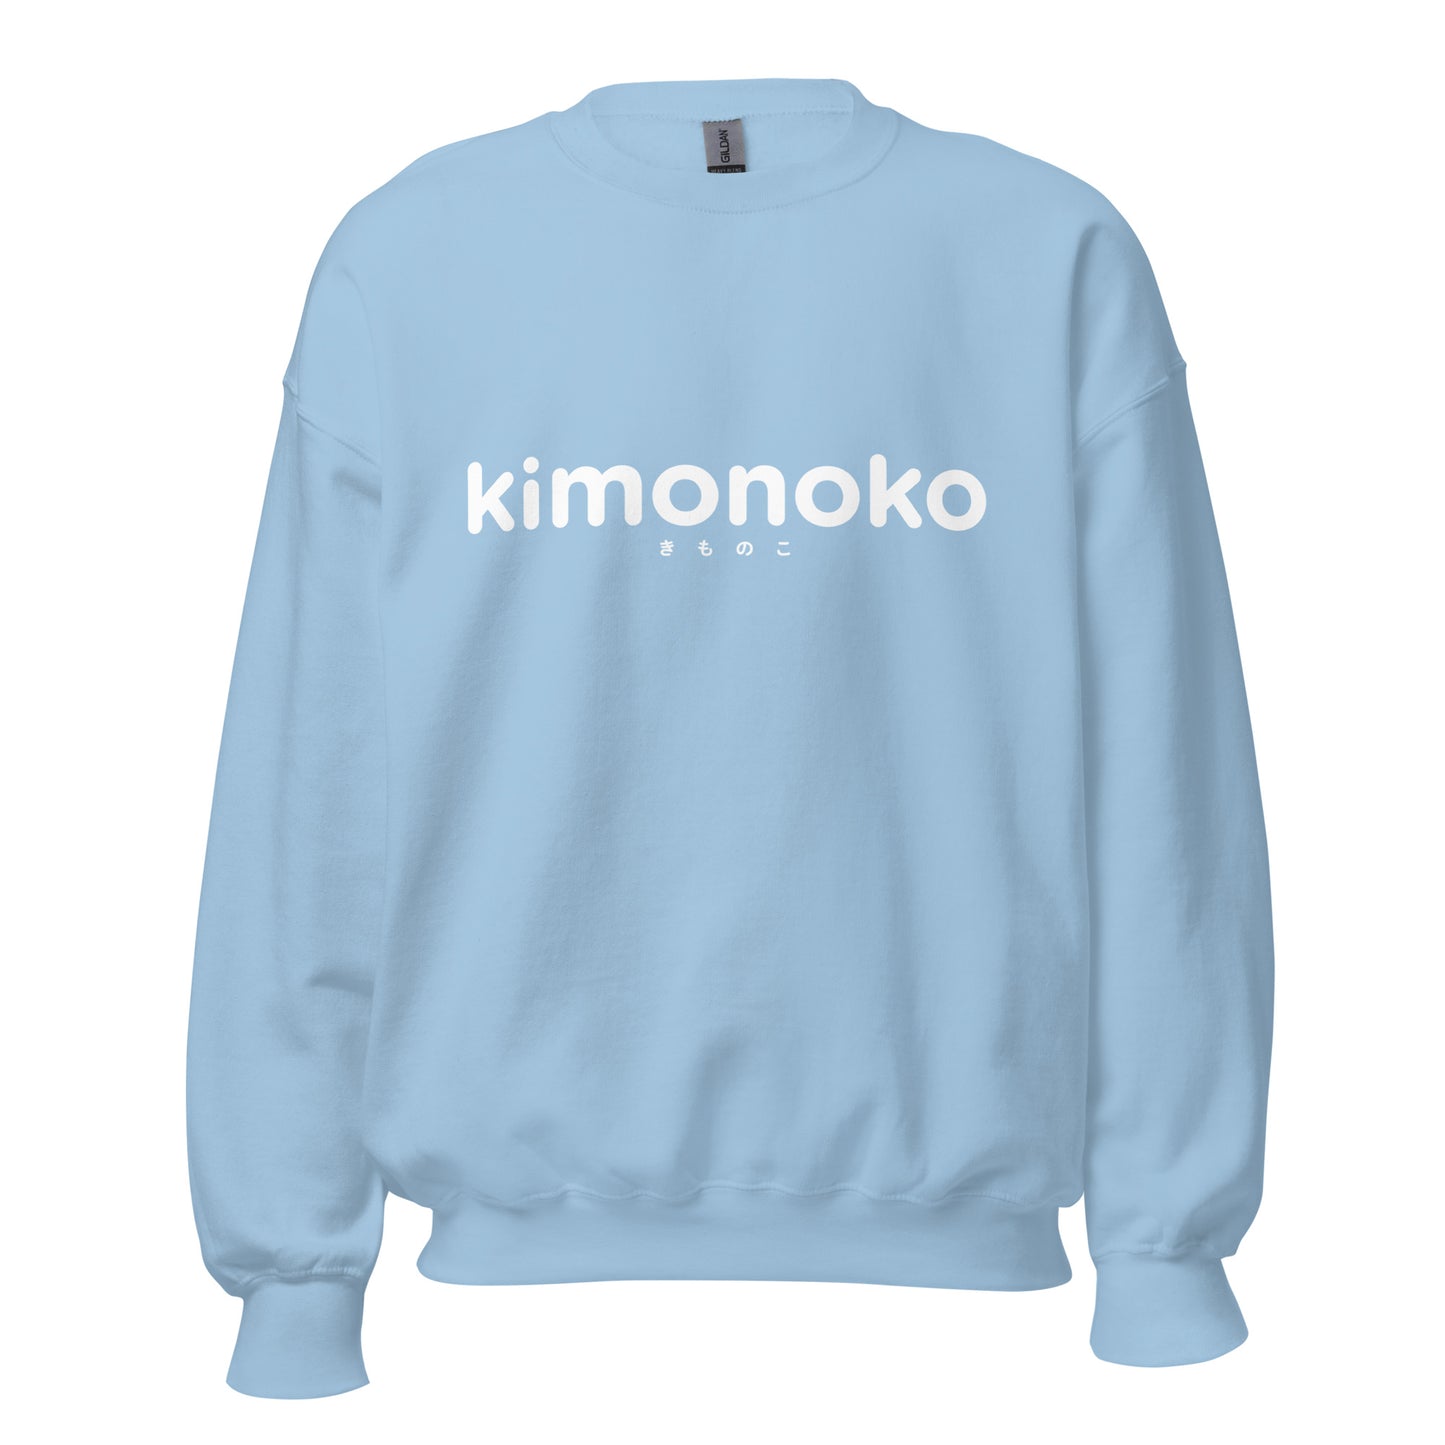 Sweatshirt for kimonoko | Unisex